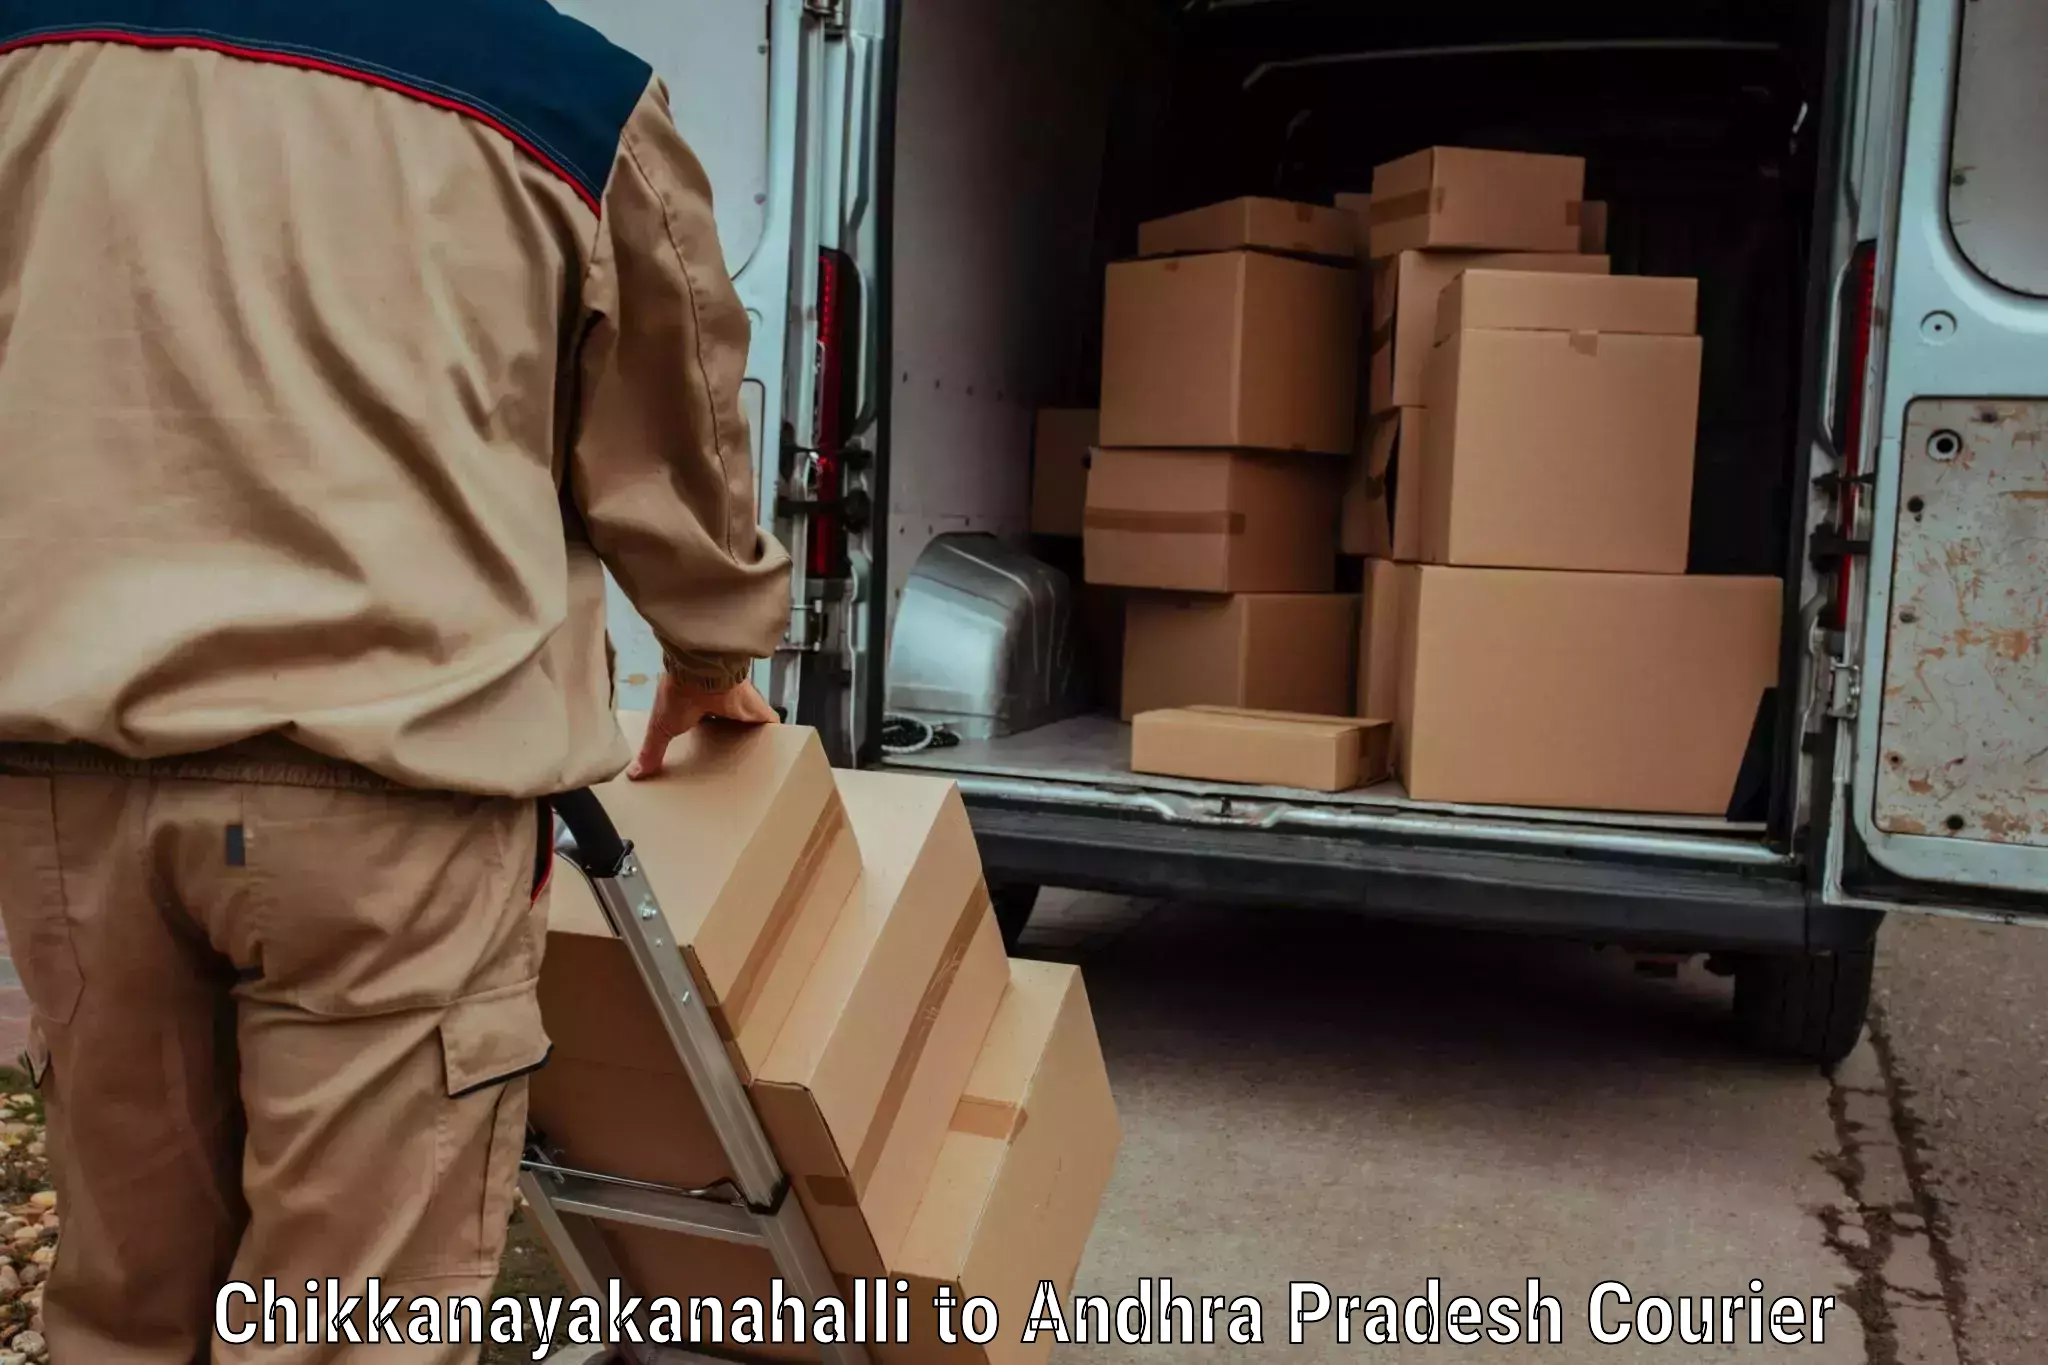 Professional courier handling Chikkanayakanahalli to Tiruvuru